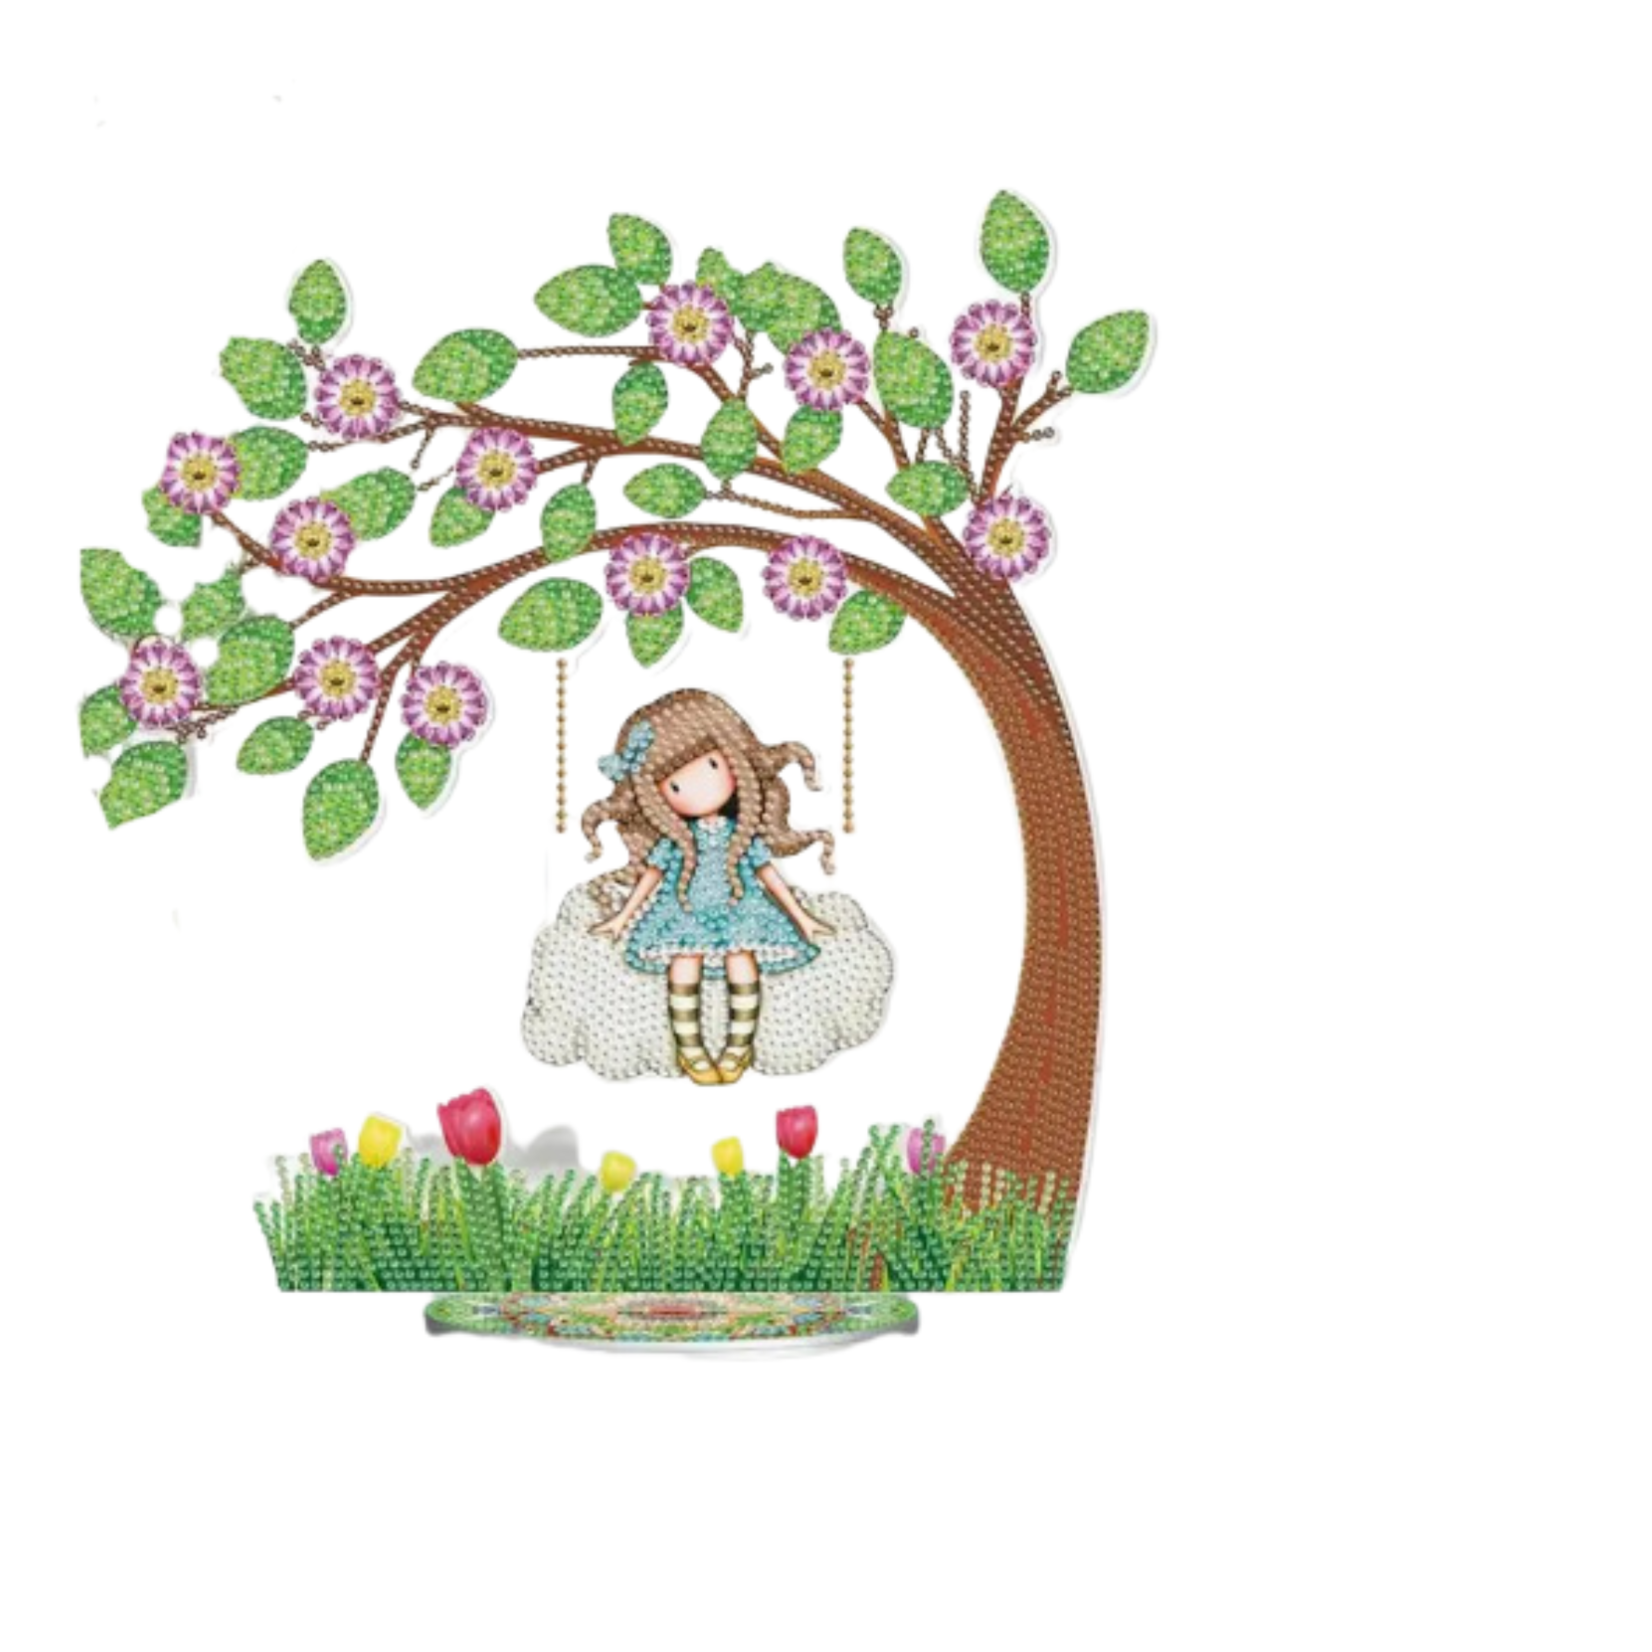 Staander meisje op wolk onder lenteboom